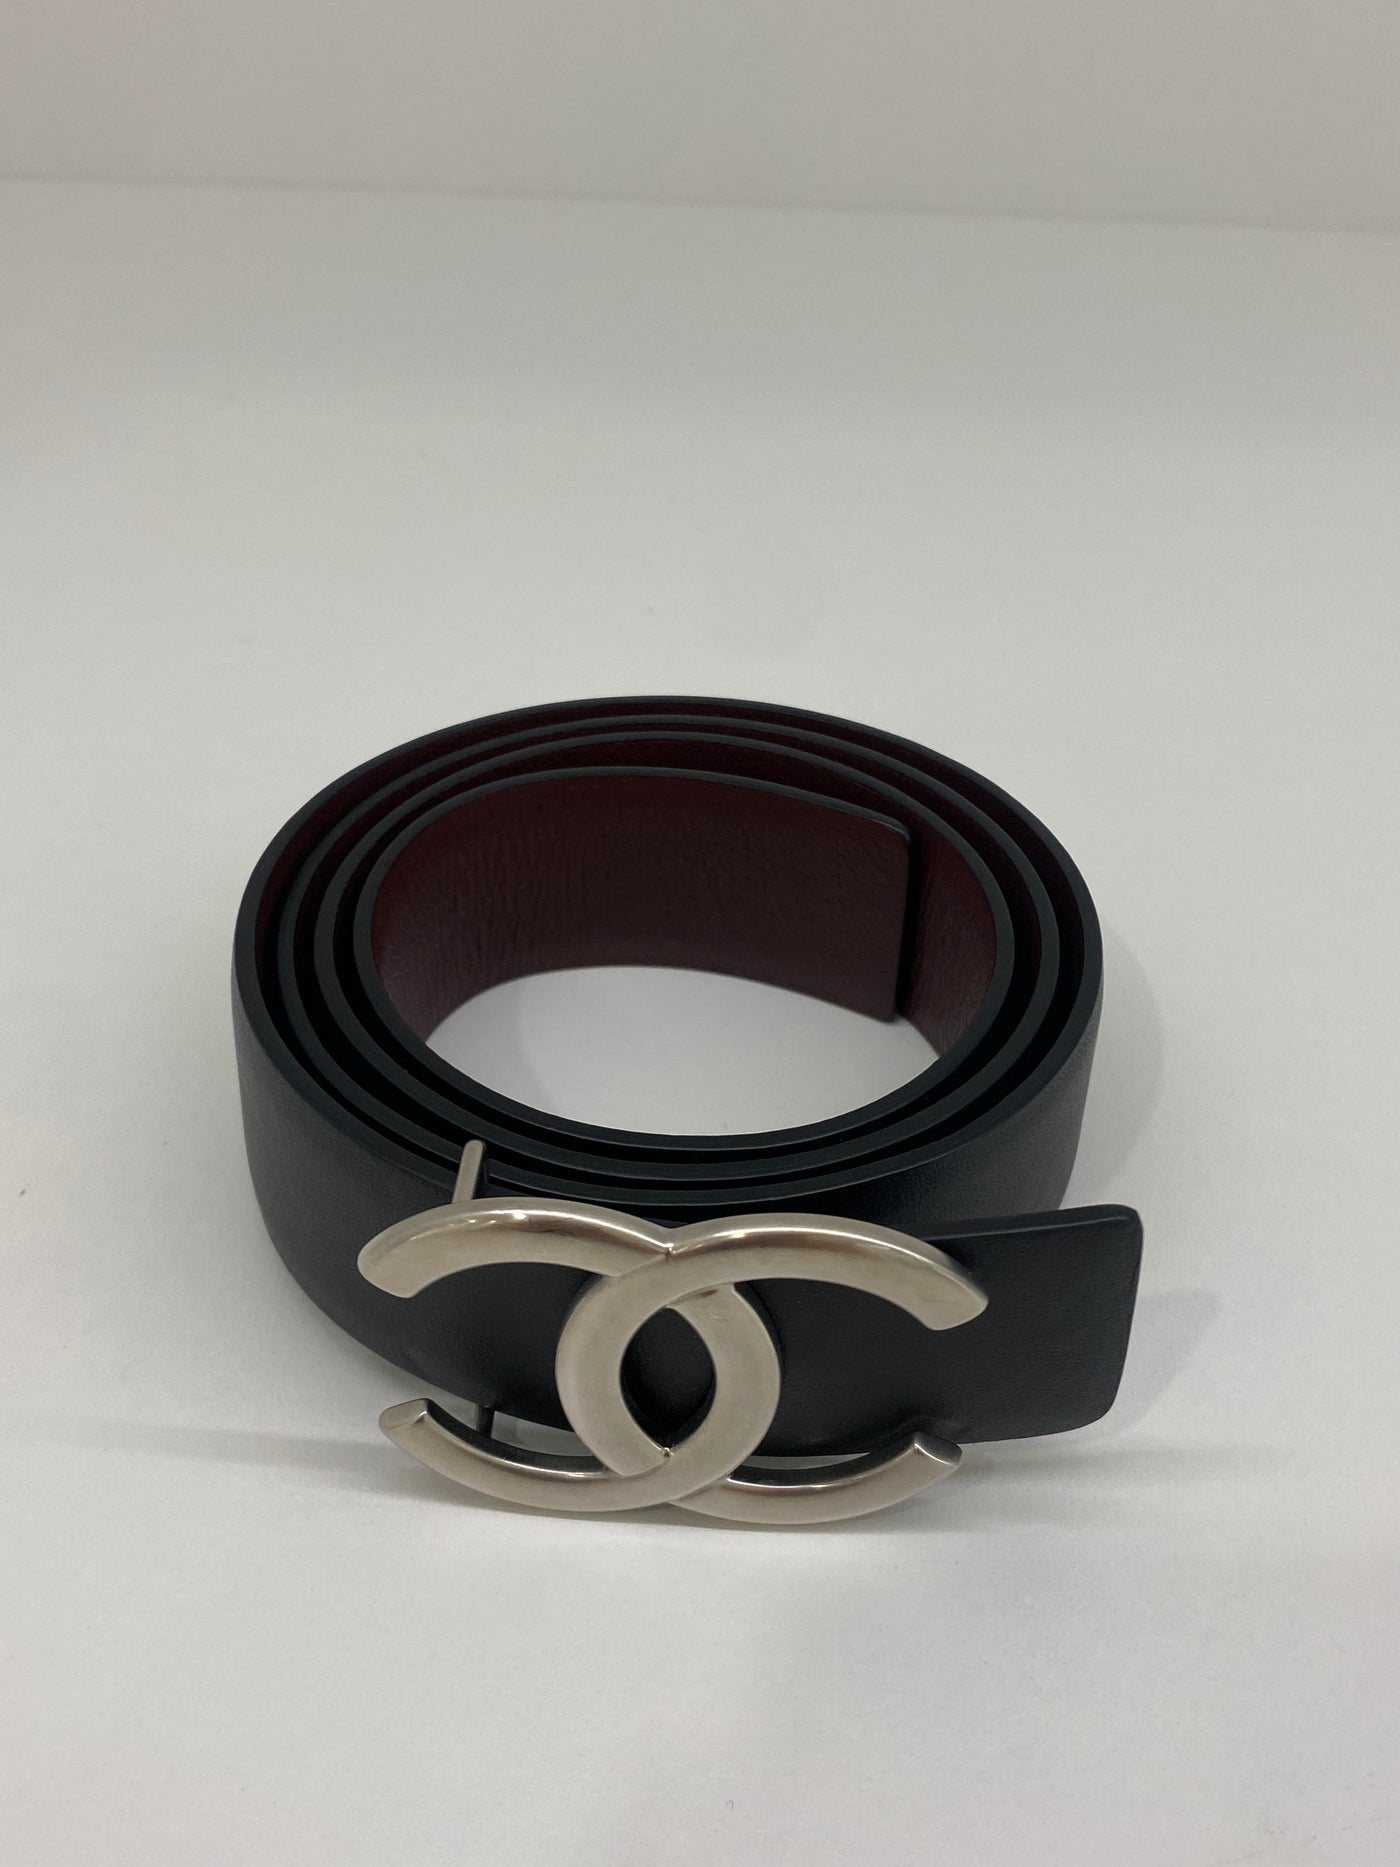 Chanel Belt SHW - Size 80